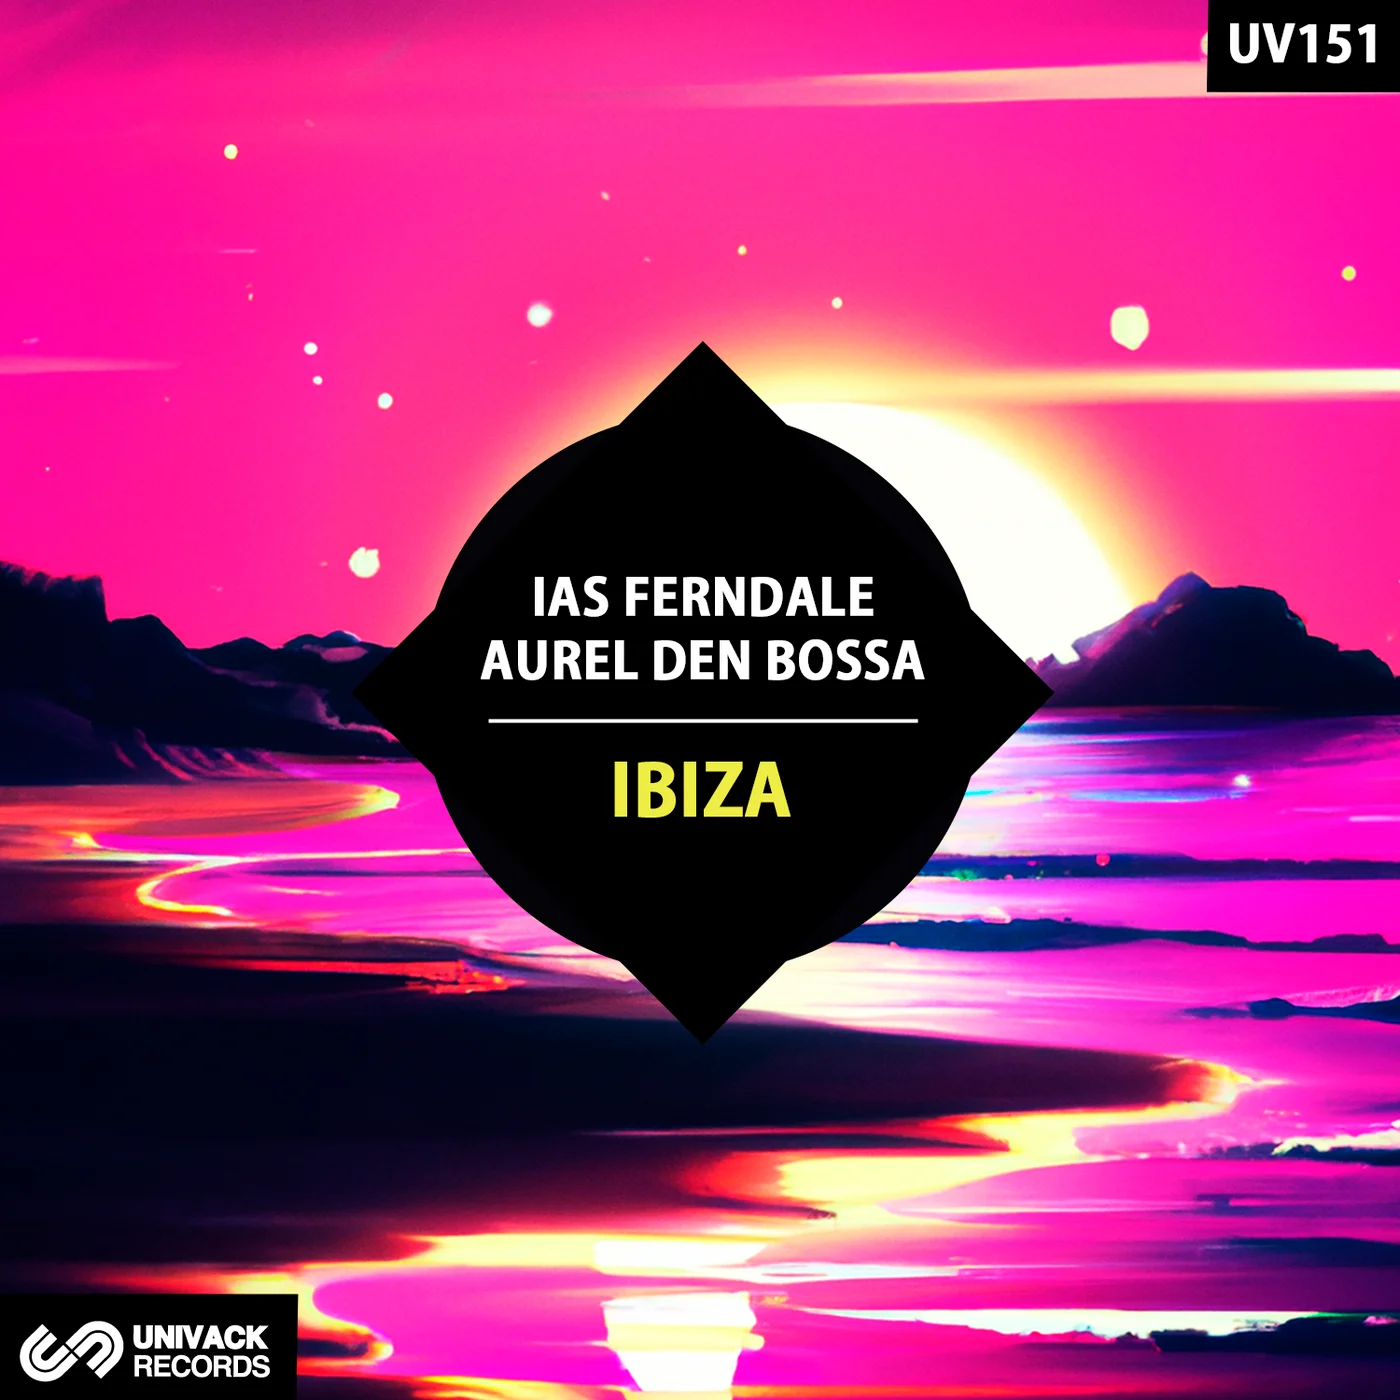 Ias Ferndale Aurel Den Bossa - Las Salinas (Original Mix)